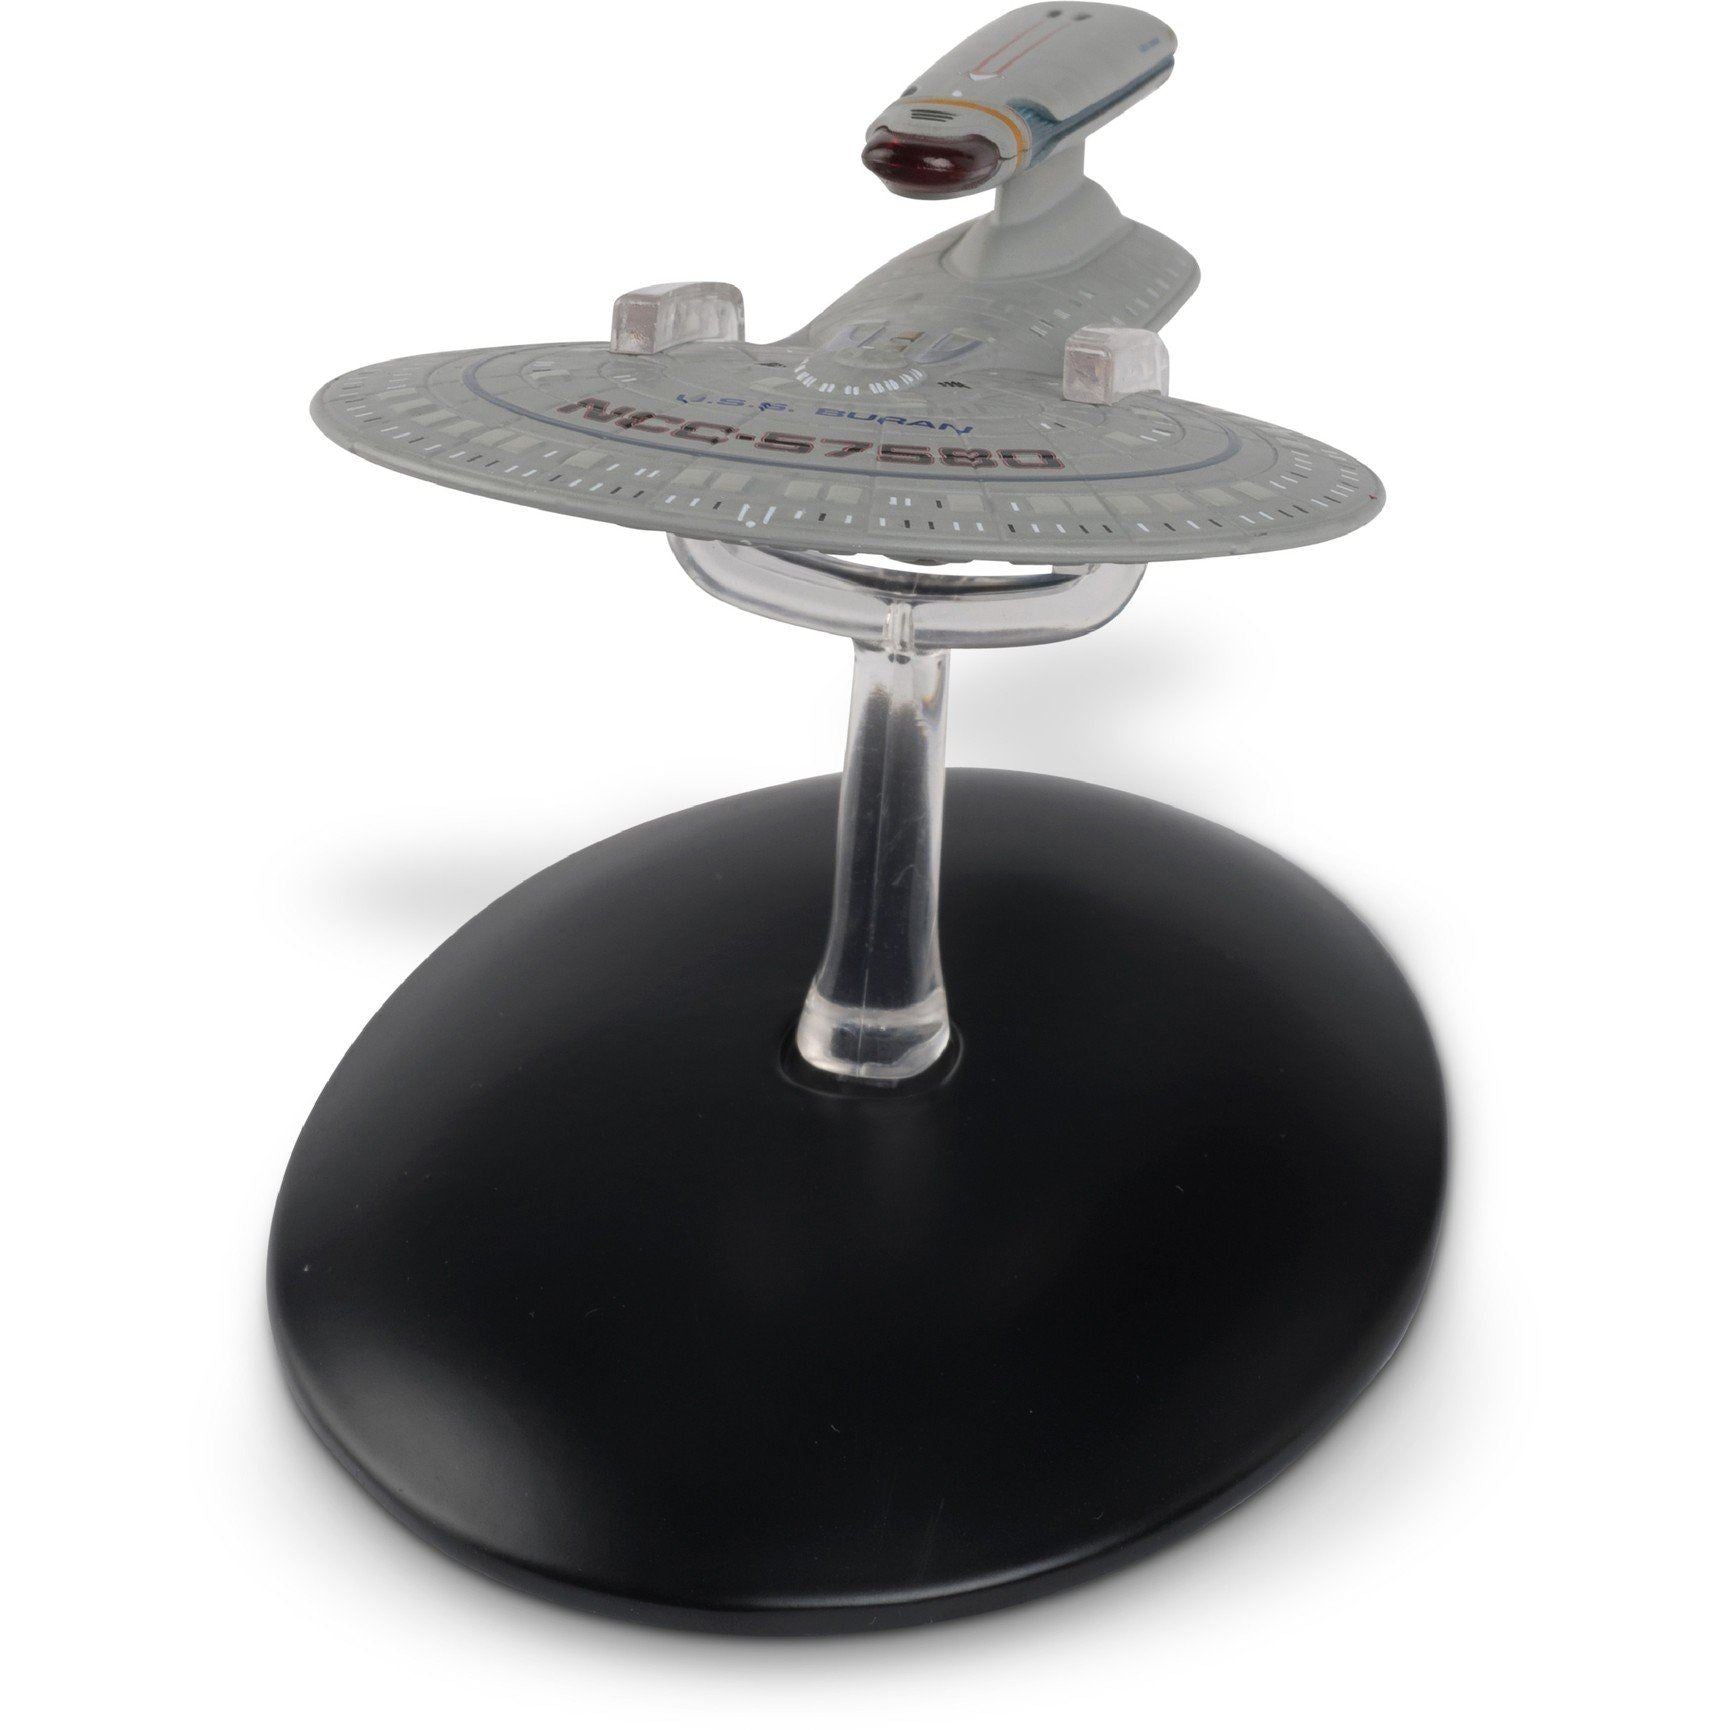 #114 Challenger Class Starship Model Die Cast Ship Eaglemoss Star Trek